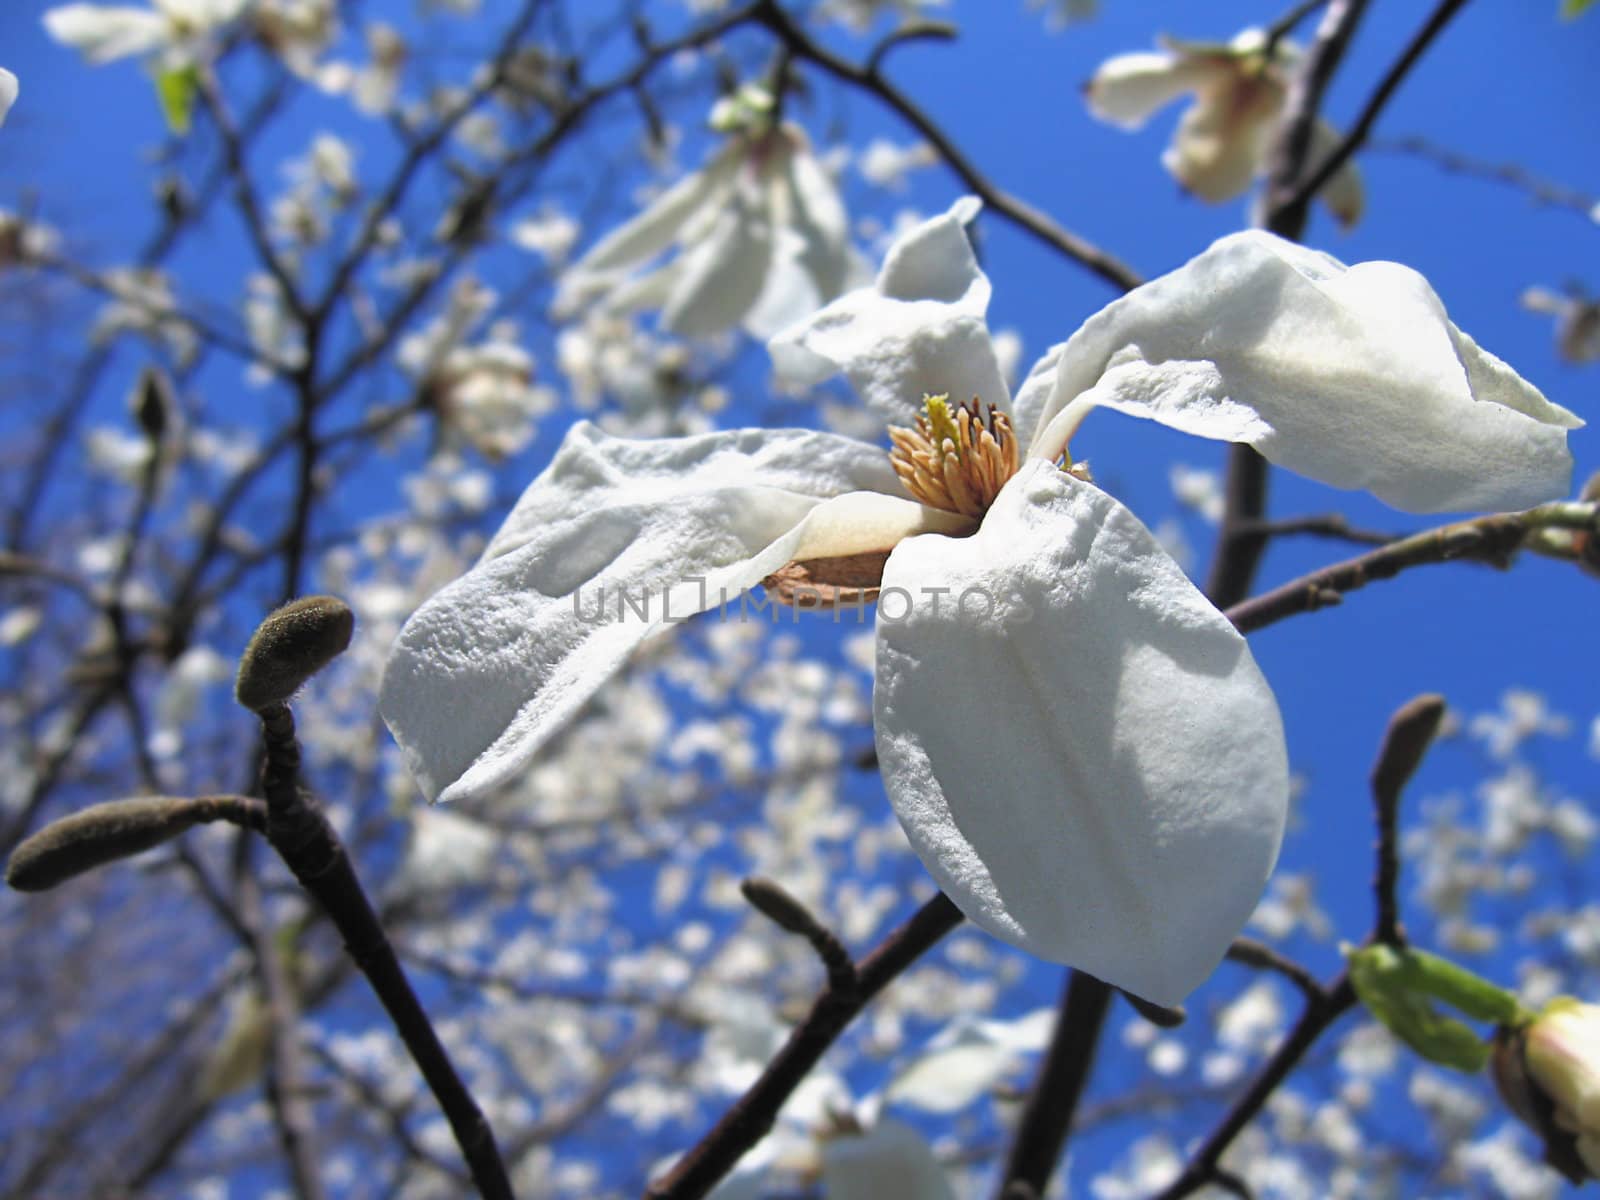 Magnolia blossom on deep blue sky